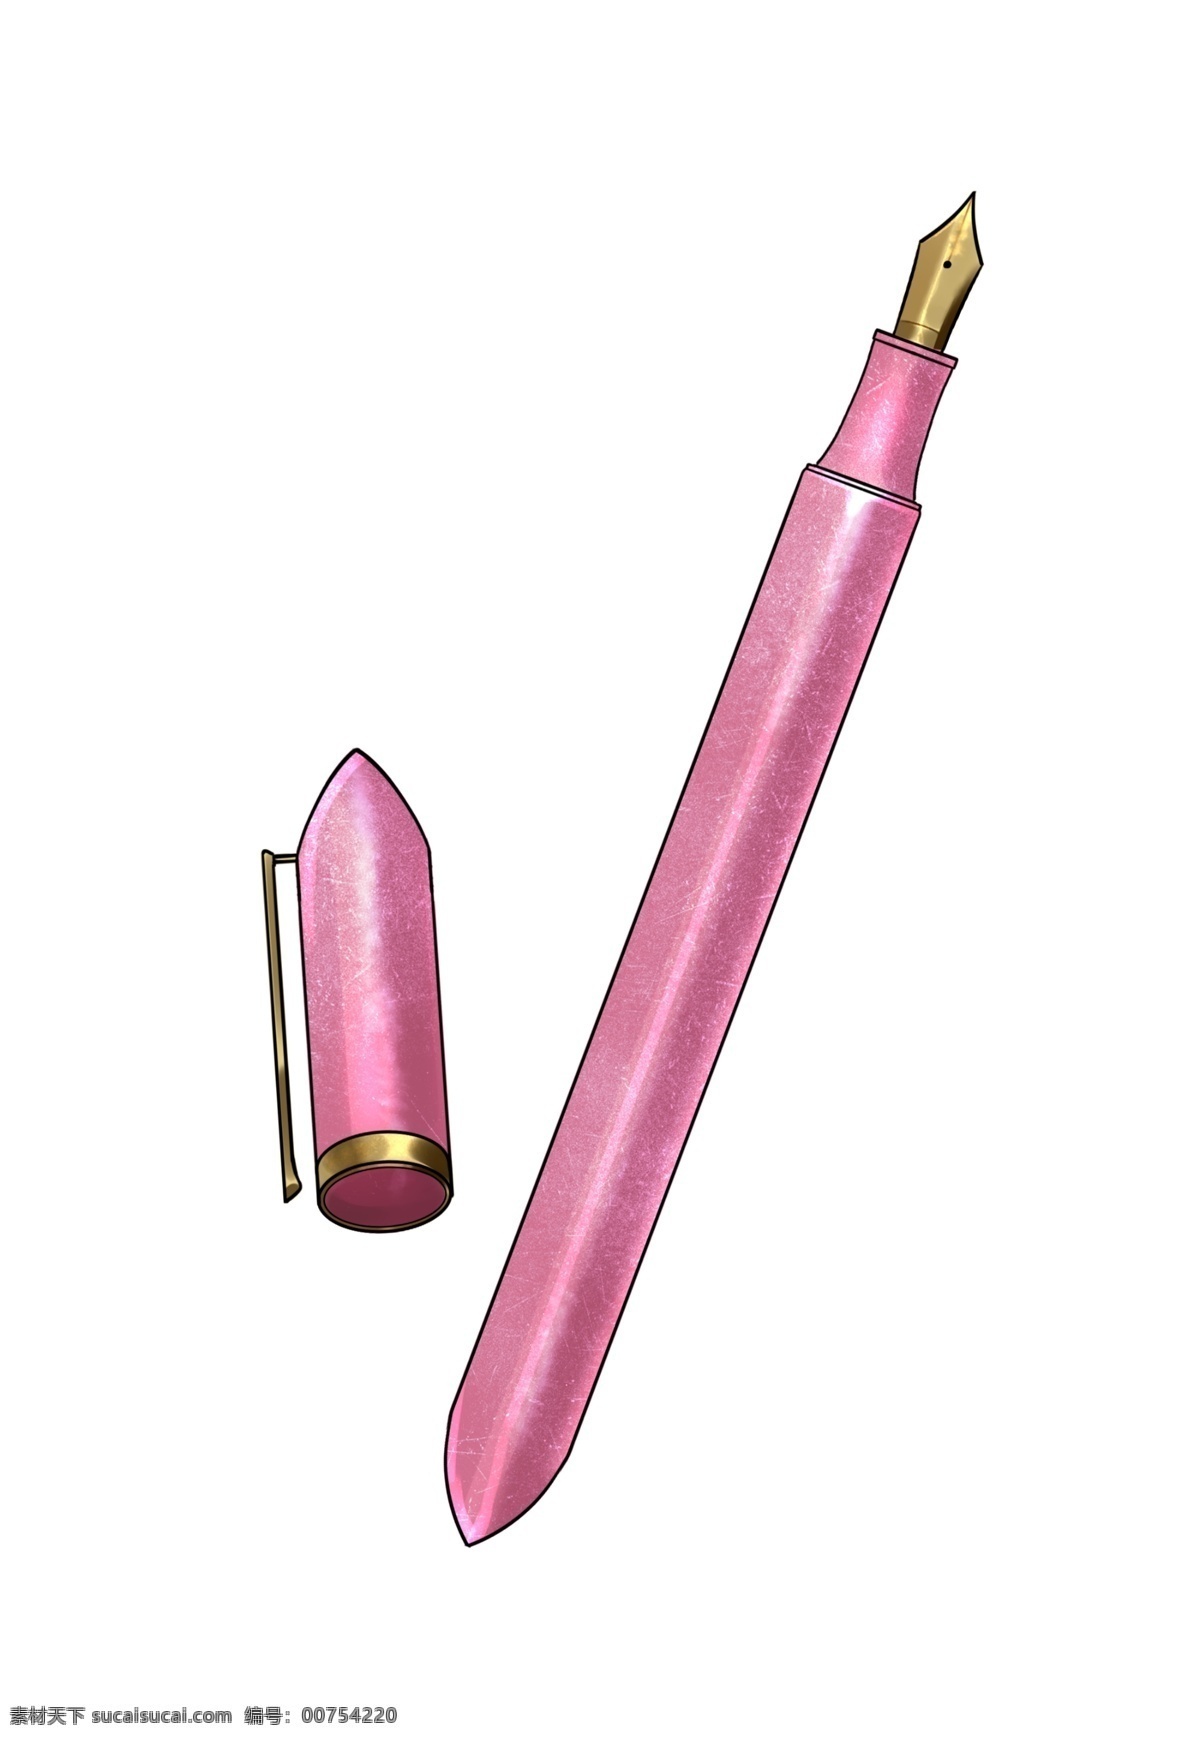 粉红色 钢笔 插画 粉红色钢笔 学习用品 黄色钢笔头 钢笔盖 学习 写字 办公用品 文具 钢笔插画